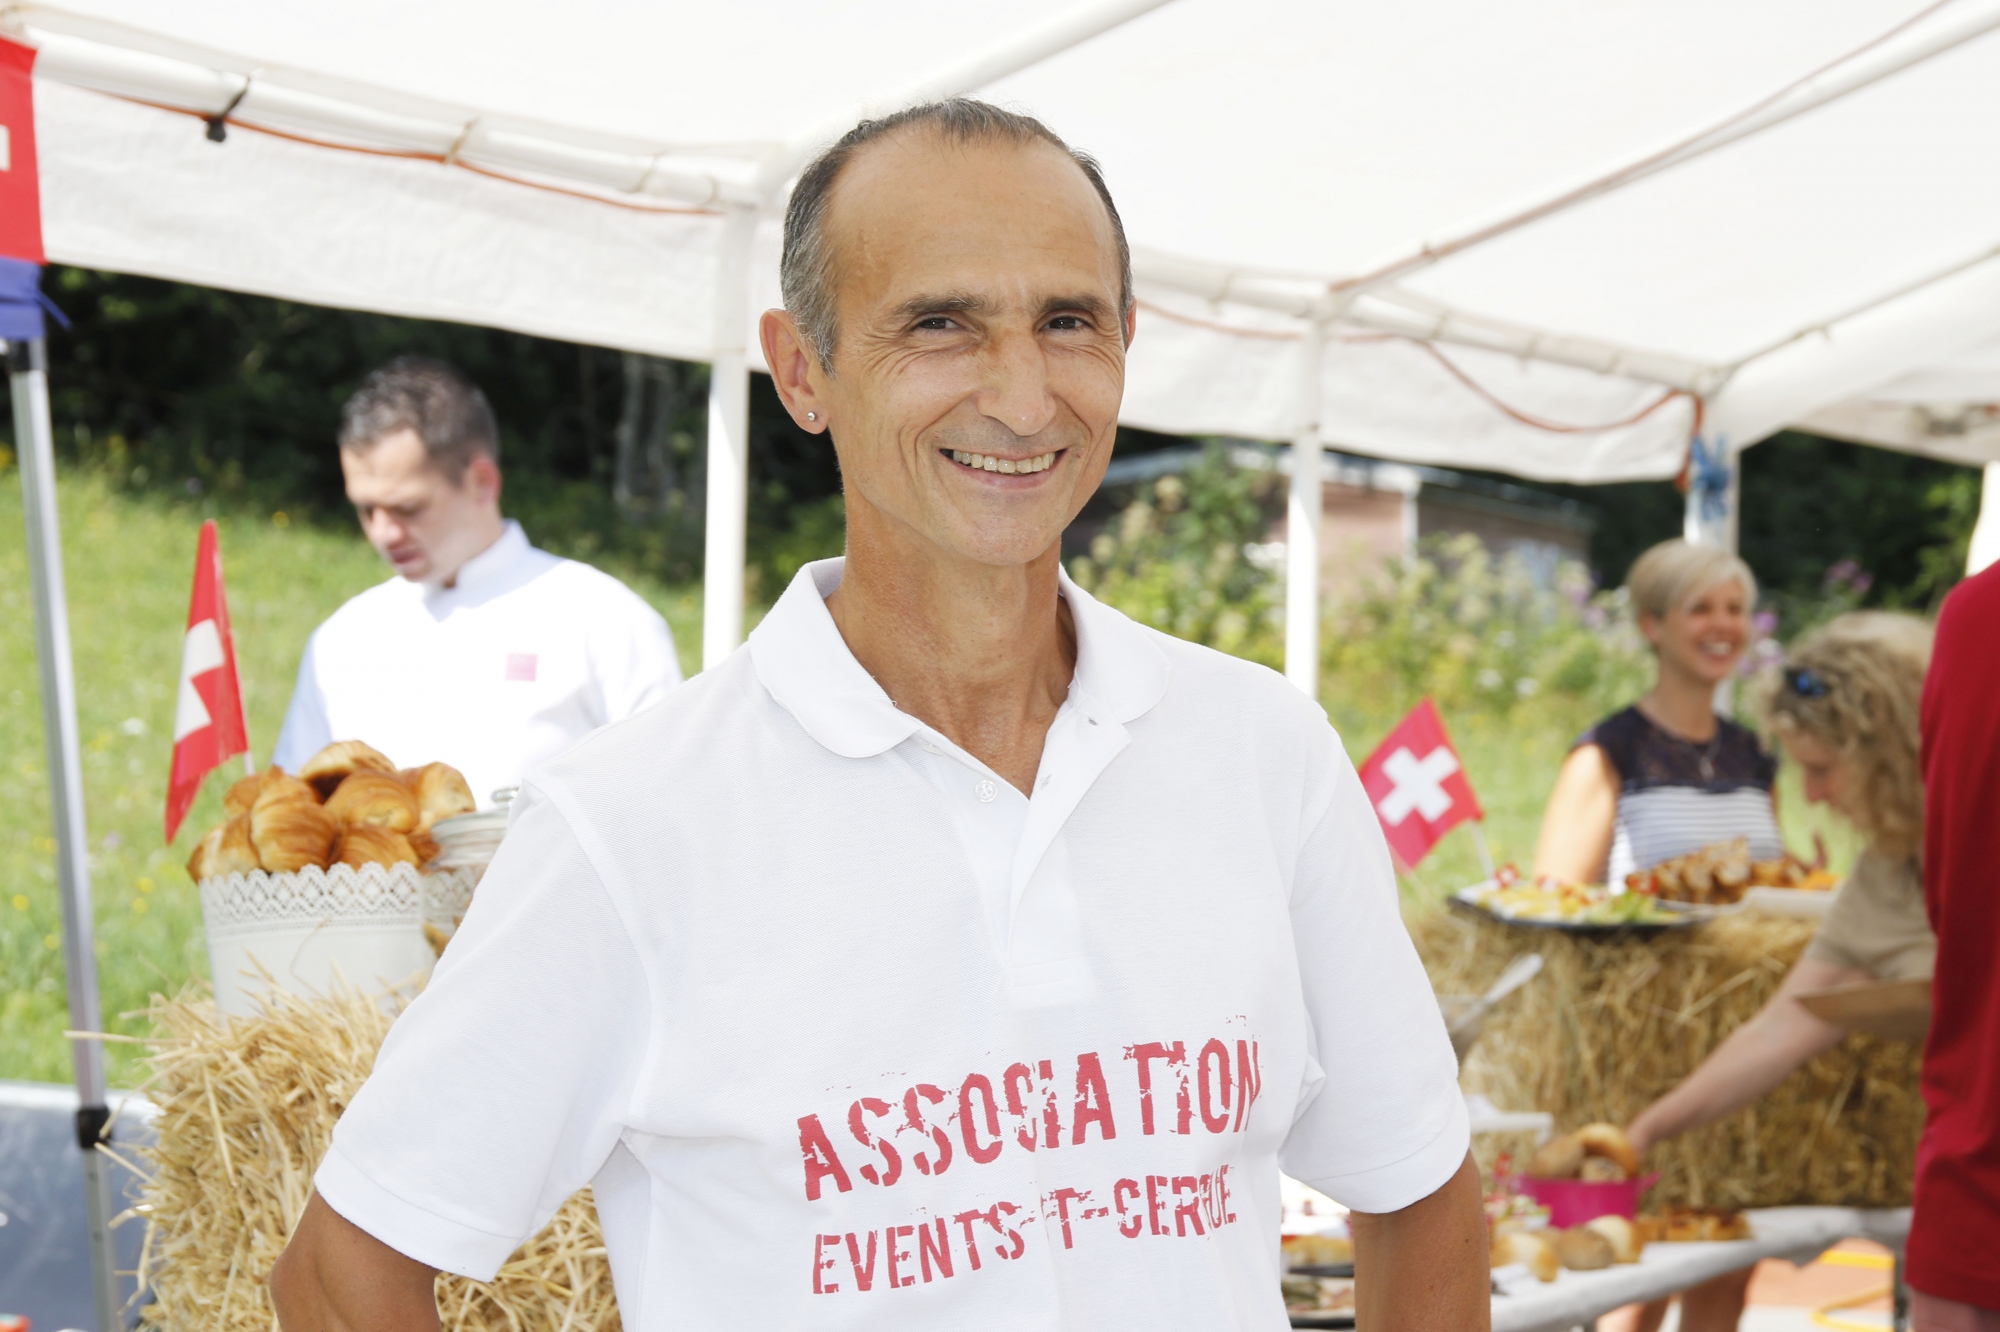 Events Saint-Cergue et son président Eusébio Bochons avaient notamment organisé le brunch du 1er août  l'année passée.